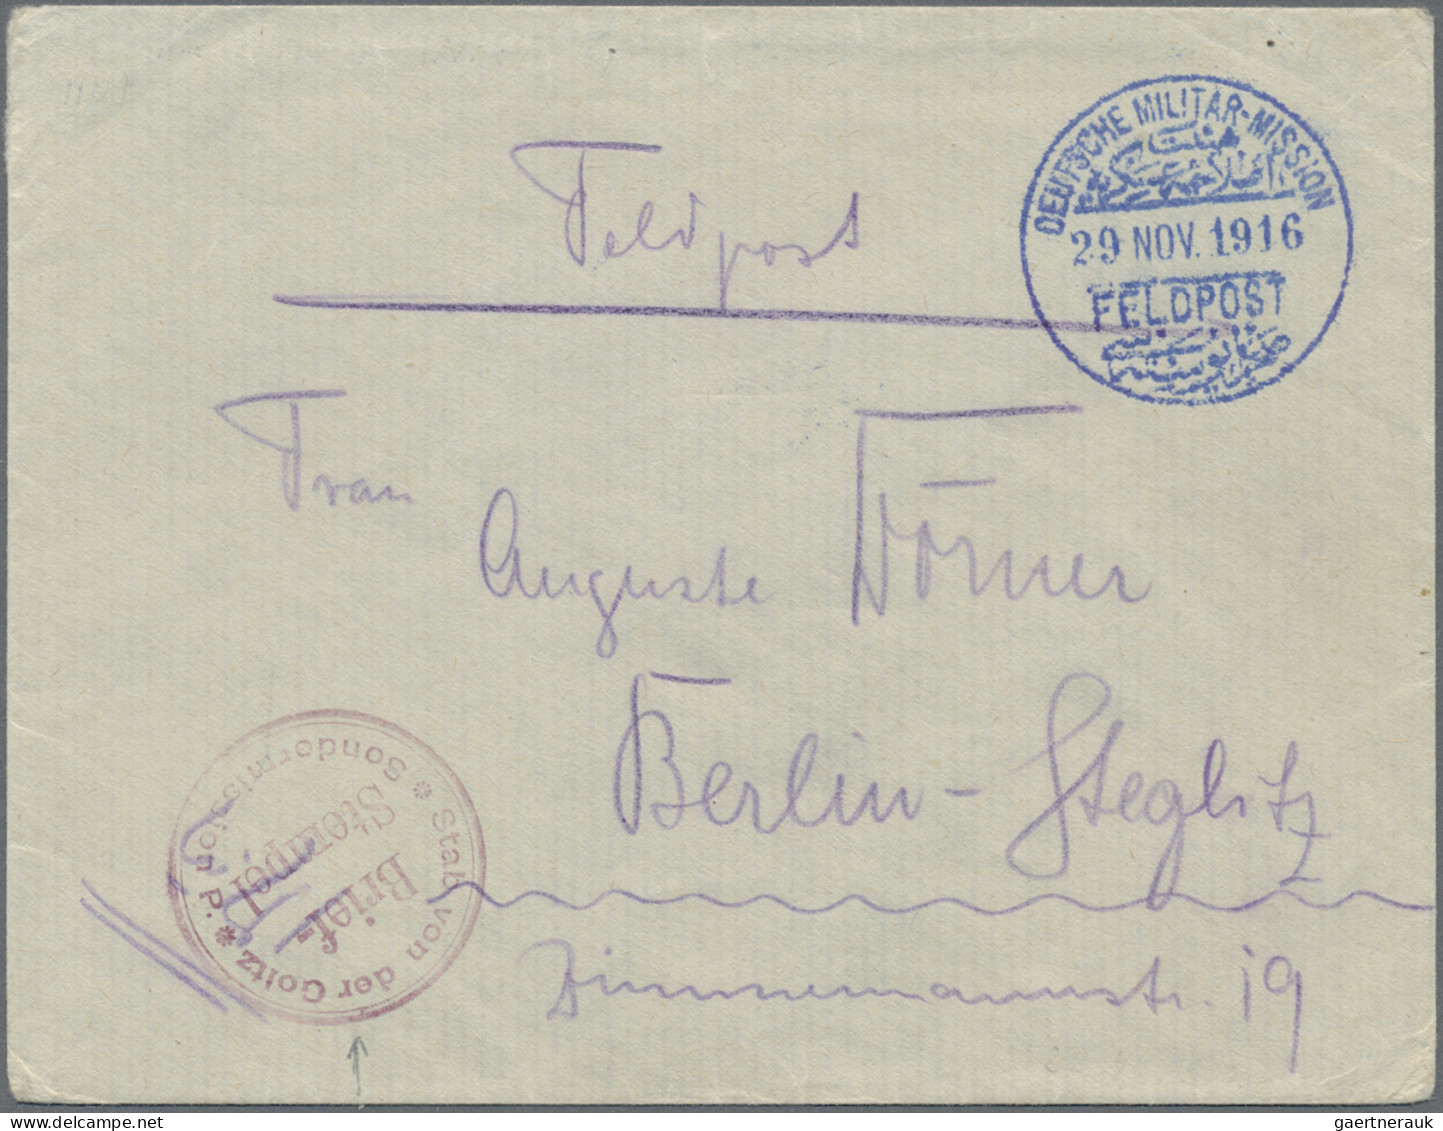 Militärmission: 1916 (20.11.), "DEUTSCHE MILITÄR-MISSION FELDPOST" Provisorische - Deutsche Post In Der Türkei